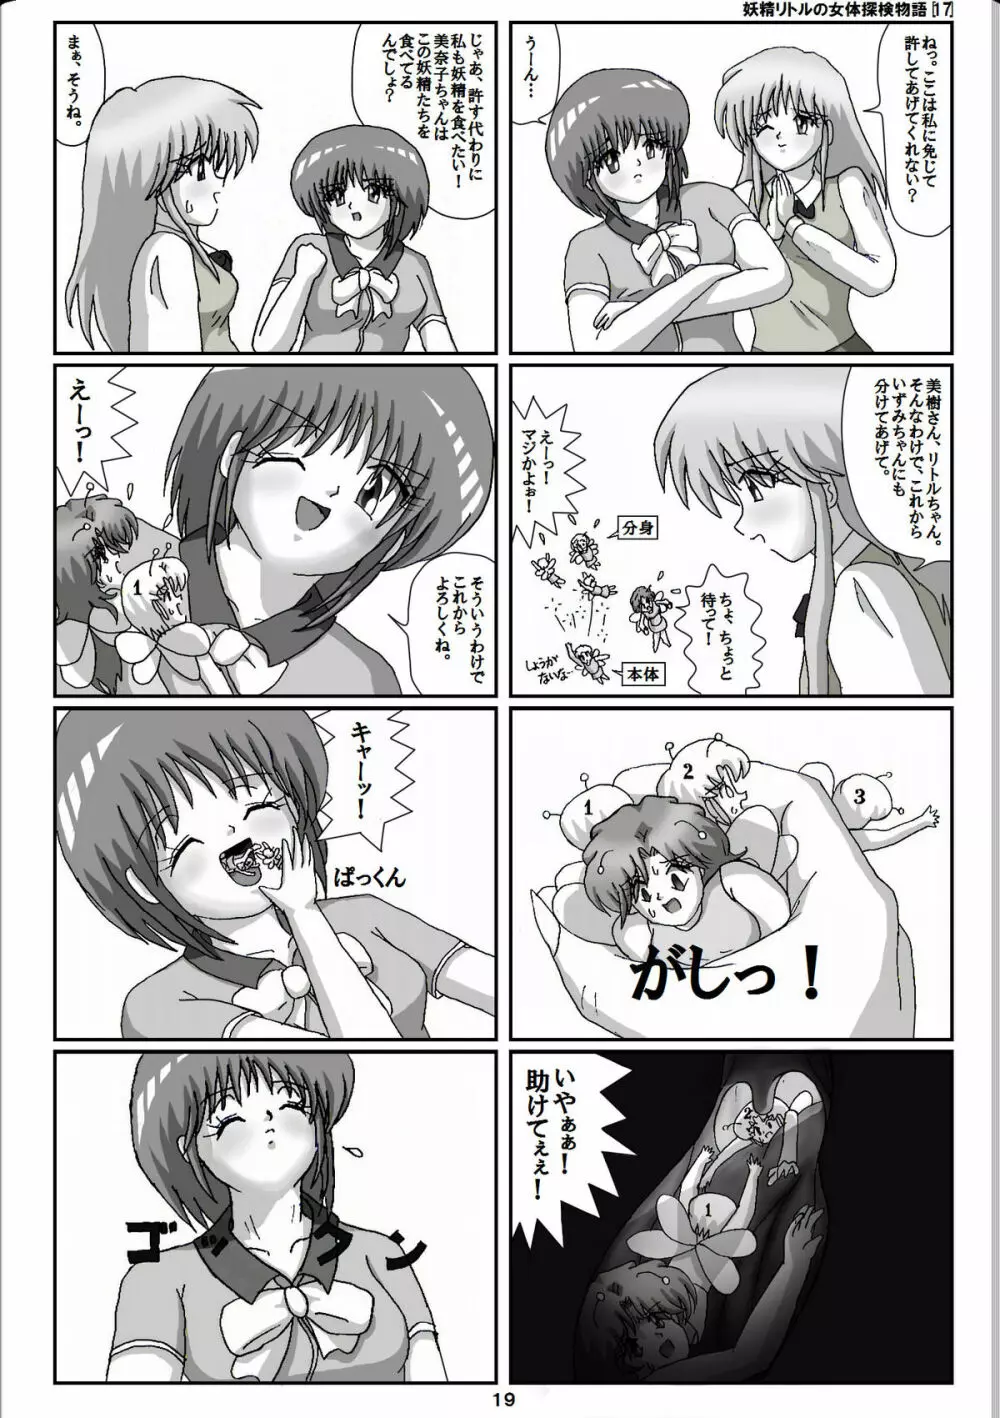 妖精リトルの女体探検物語 17 19ページ